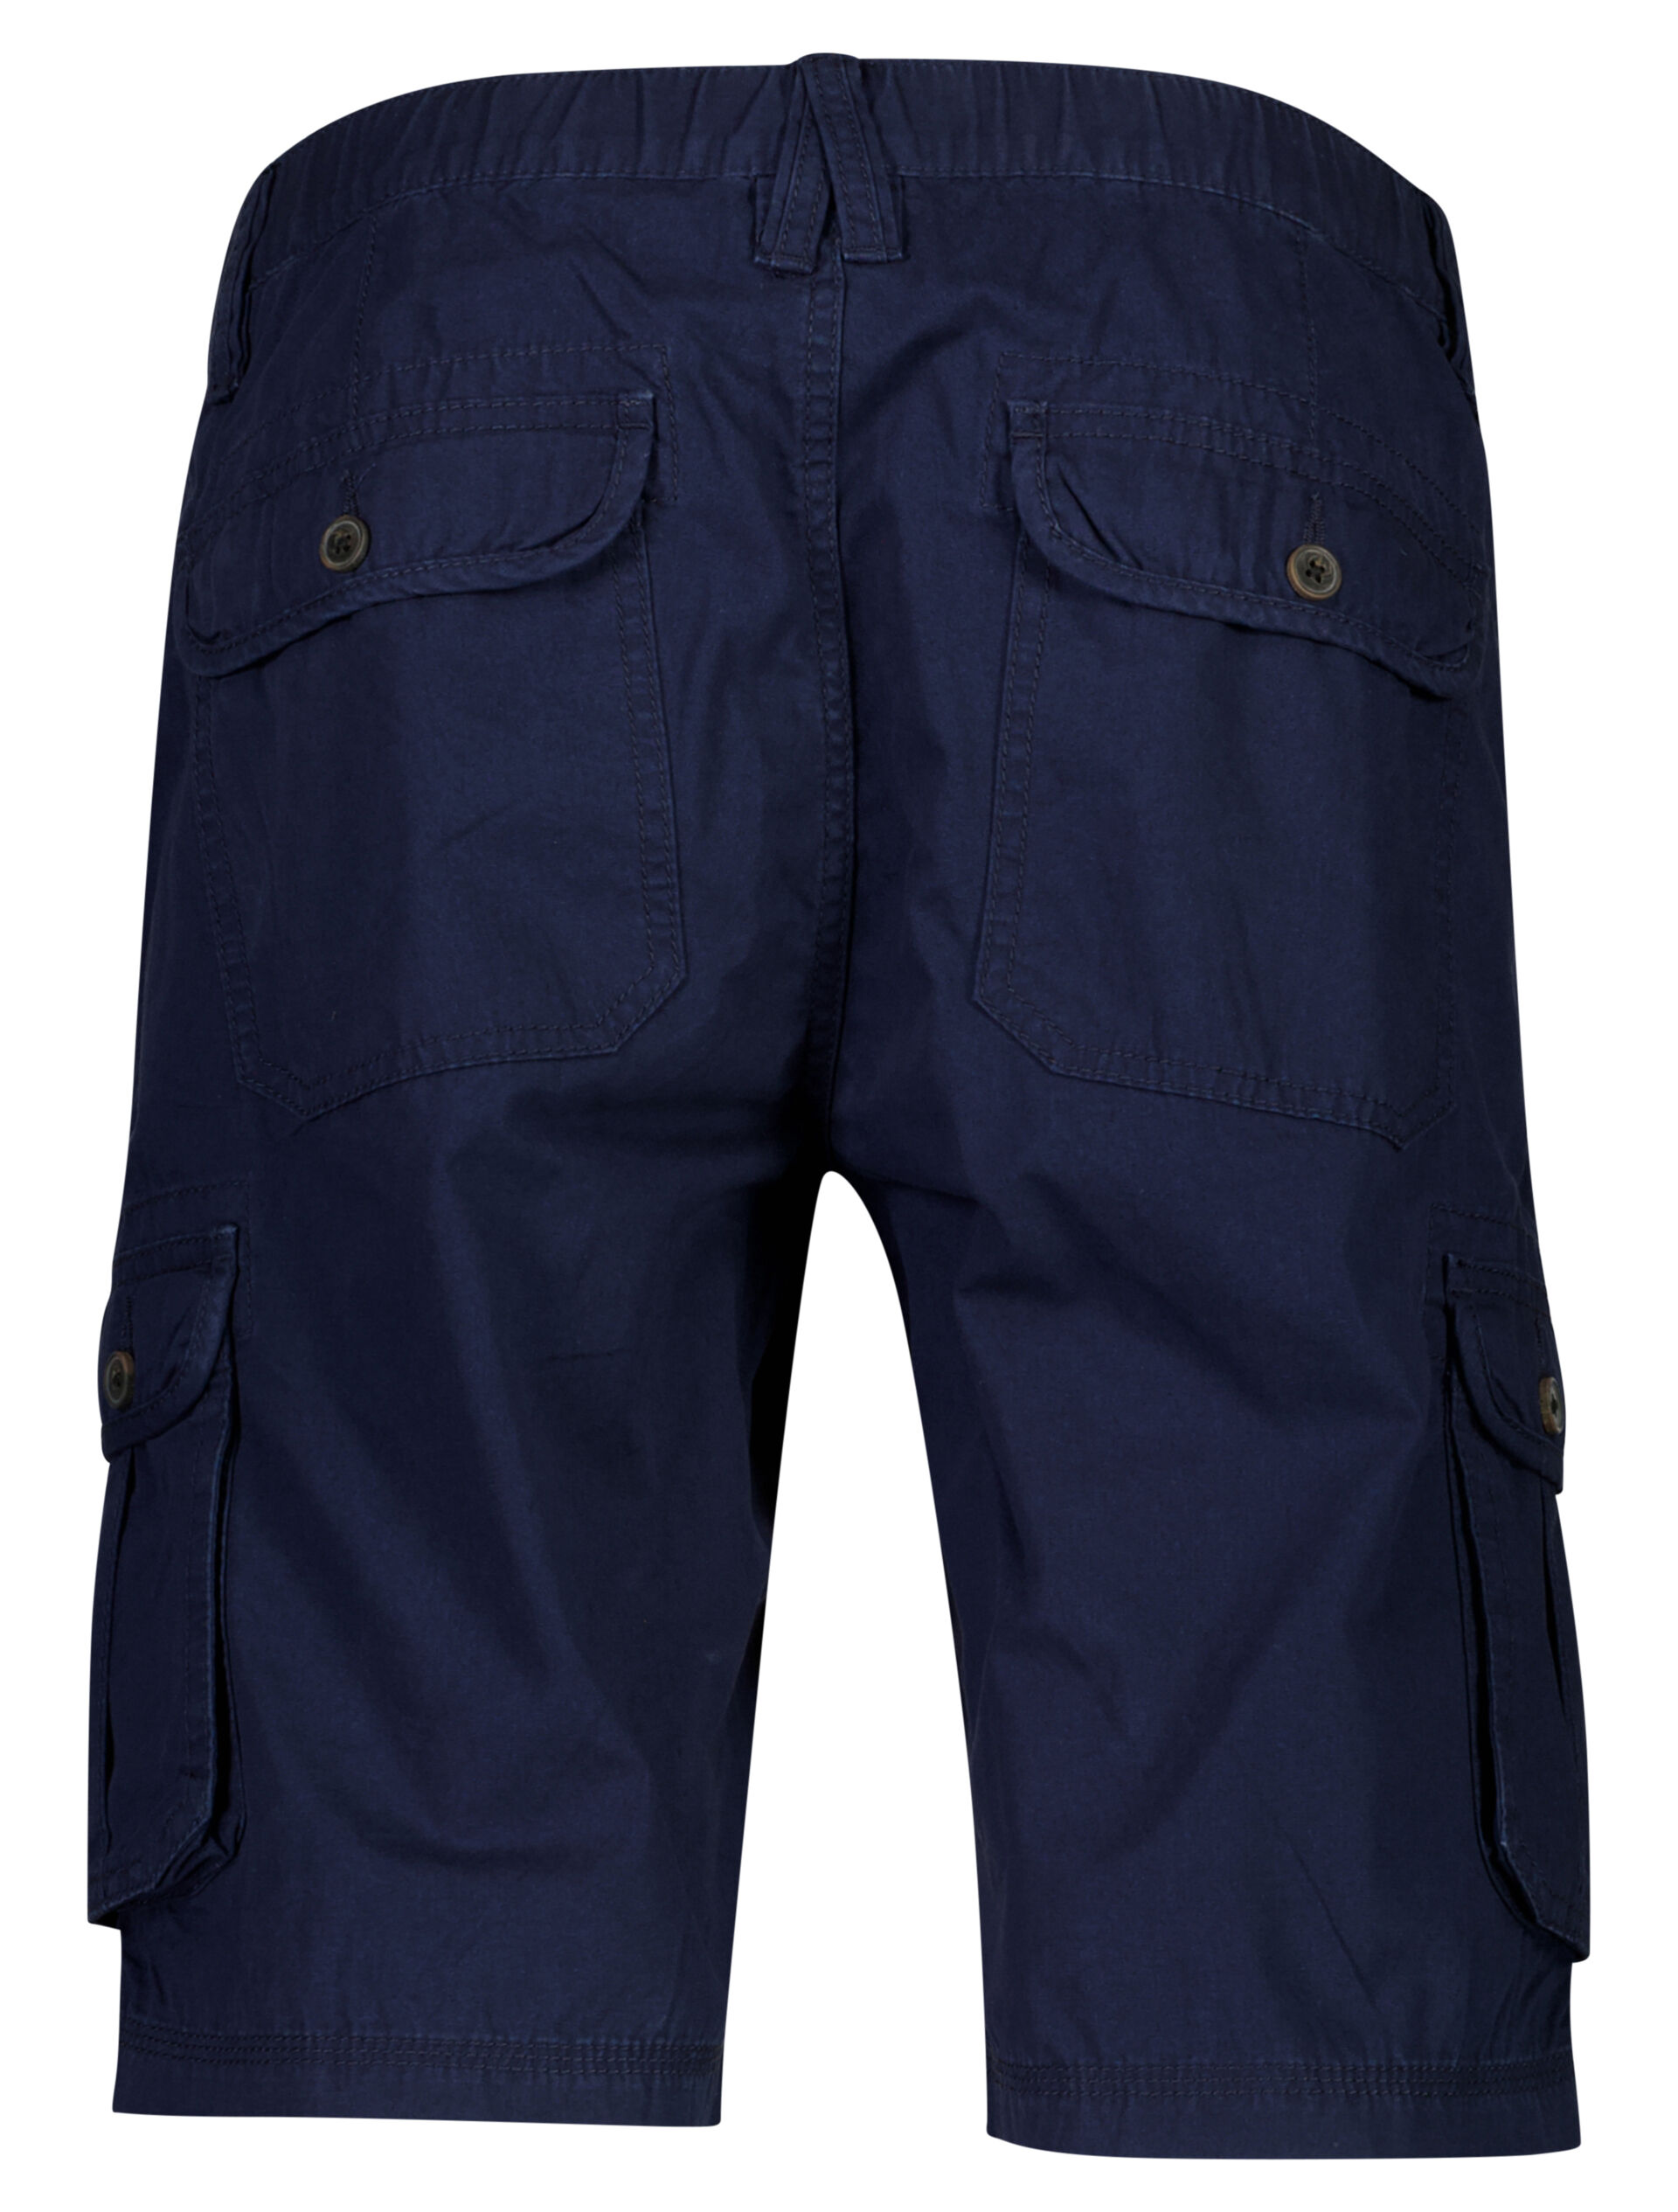 Jack's  Cargo shorts 3-550045PLUS